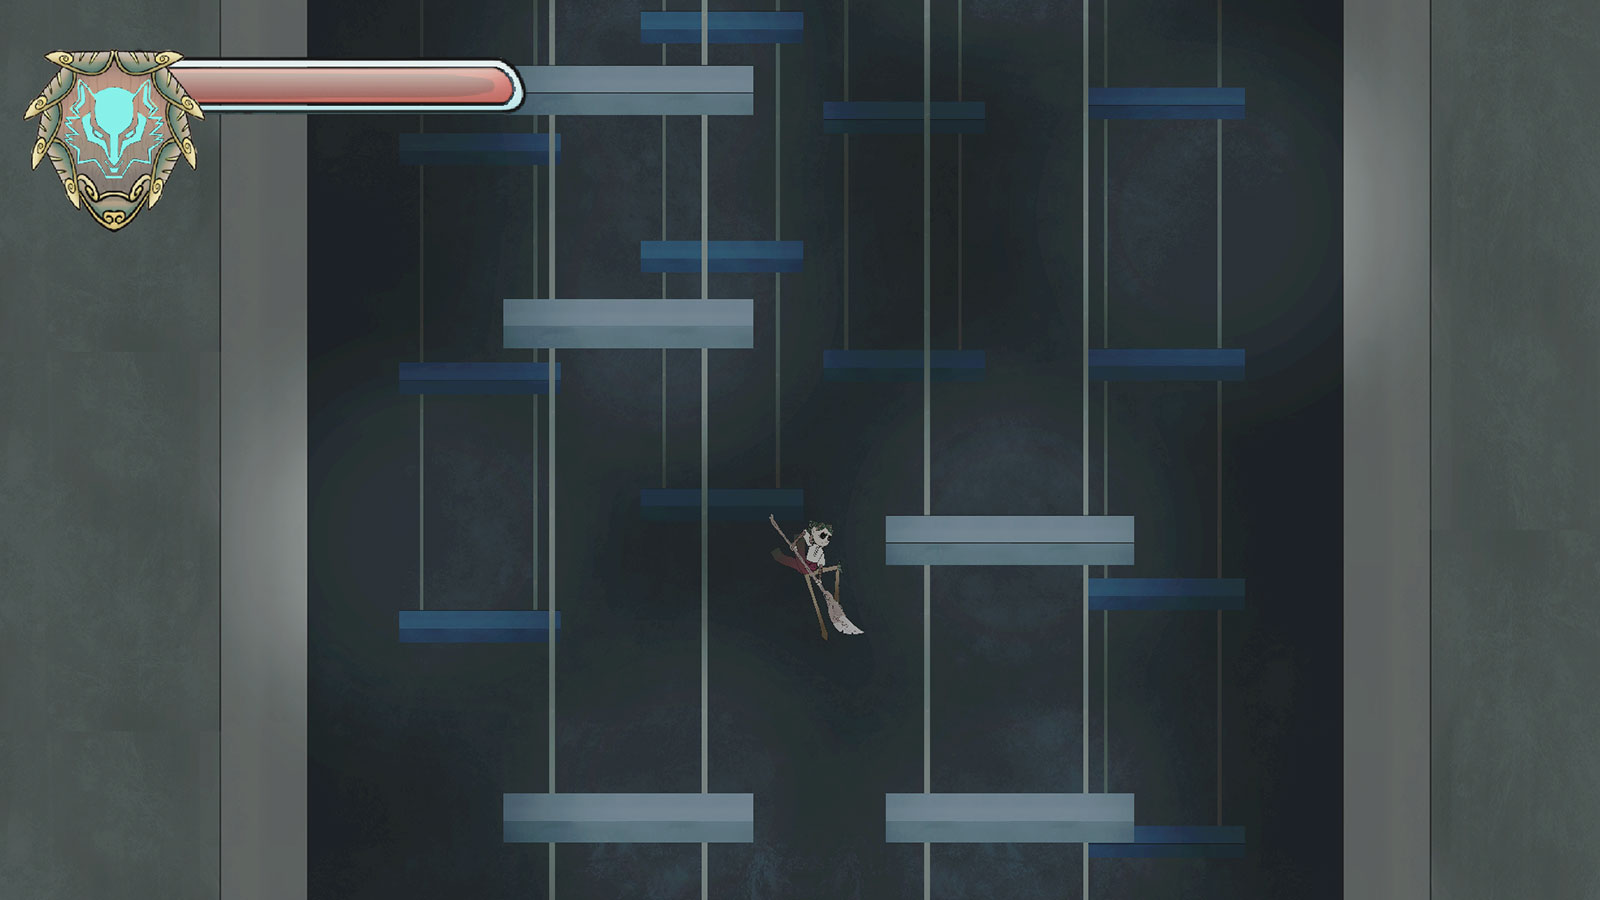 El jugador salta por un pozo entre plataformas cuadradas.